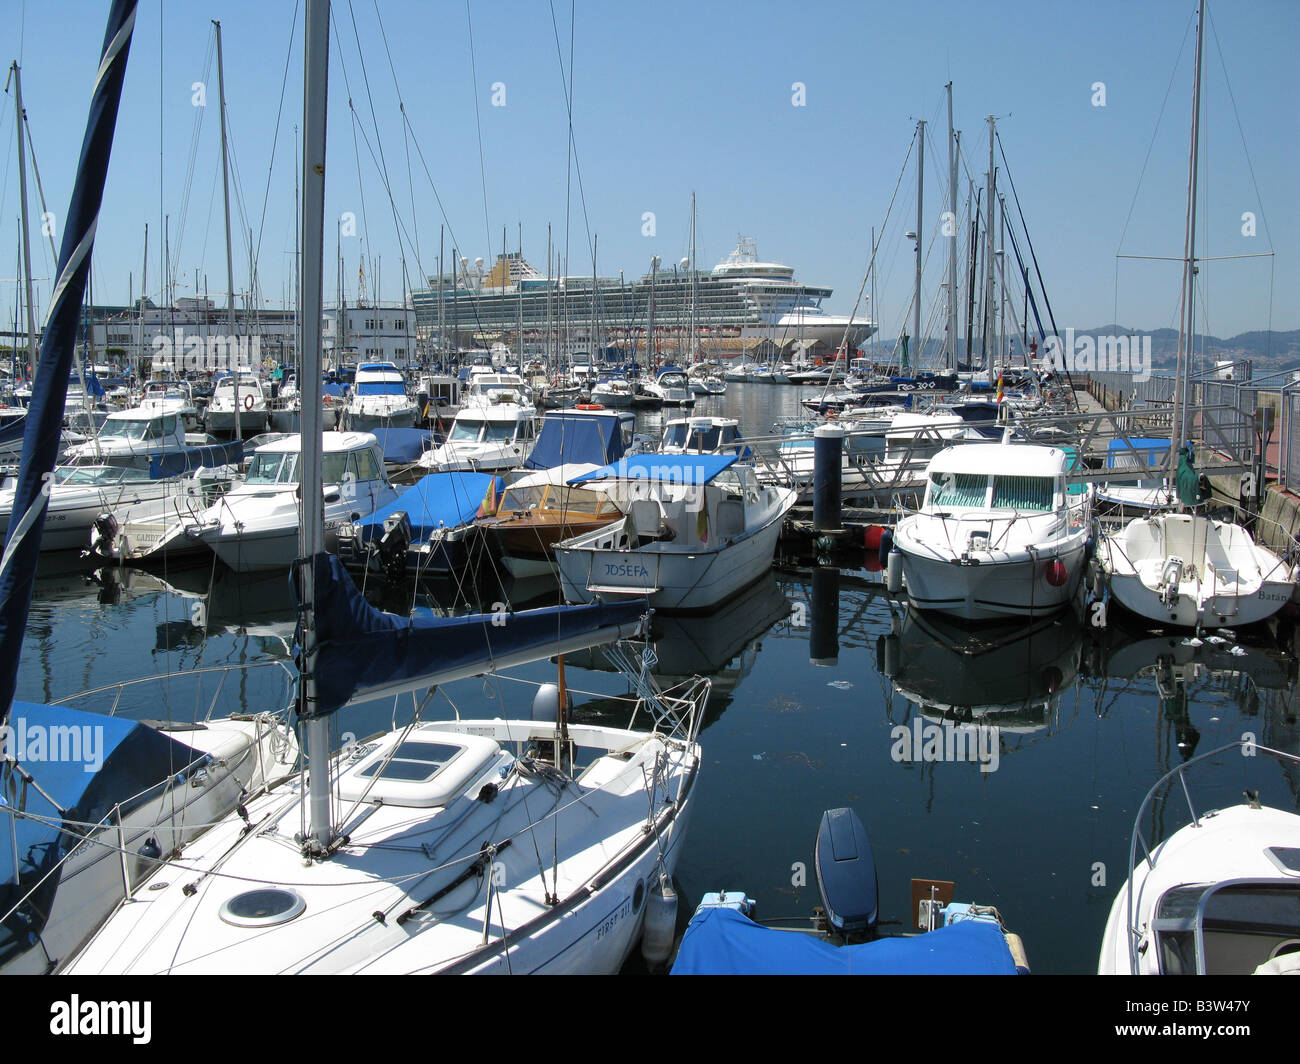 P&O cruise ship Ventura at berth in Vigo, Galicia, Spain, España, Europe Stock Photo